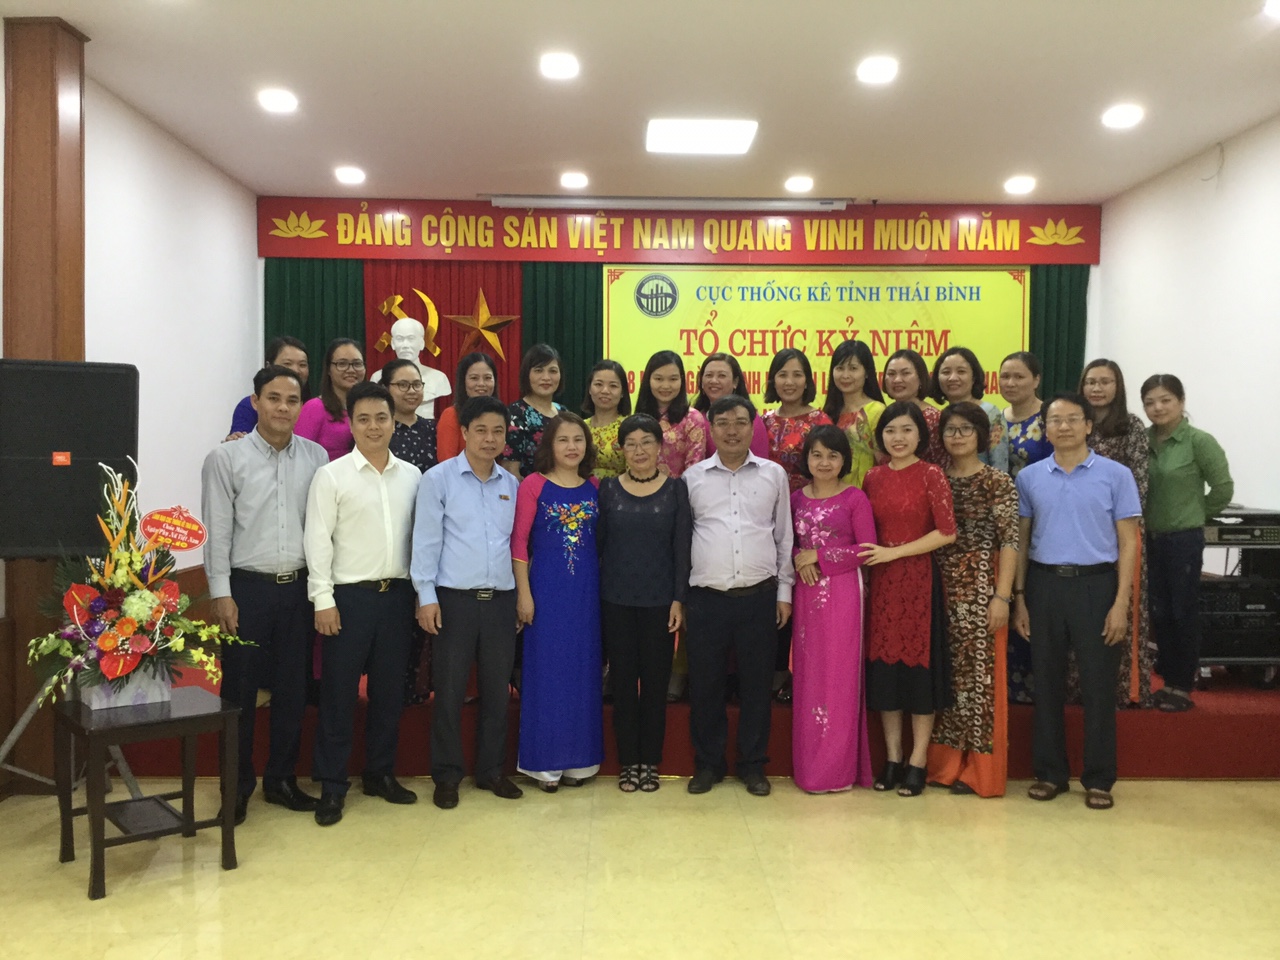 Cục Thống kê Thái Bình tổ chức Lễ kỷ niệm 88 năm thành lập Hội Liên hiệp phụ nữ Việt Nam và tọa đàm với nhà thơ Phan Thị Thanh Nhàn